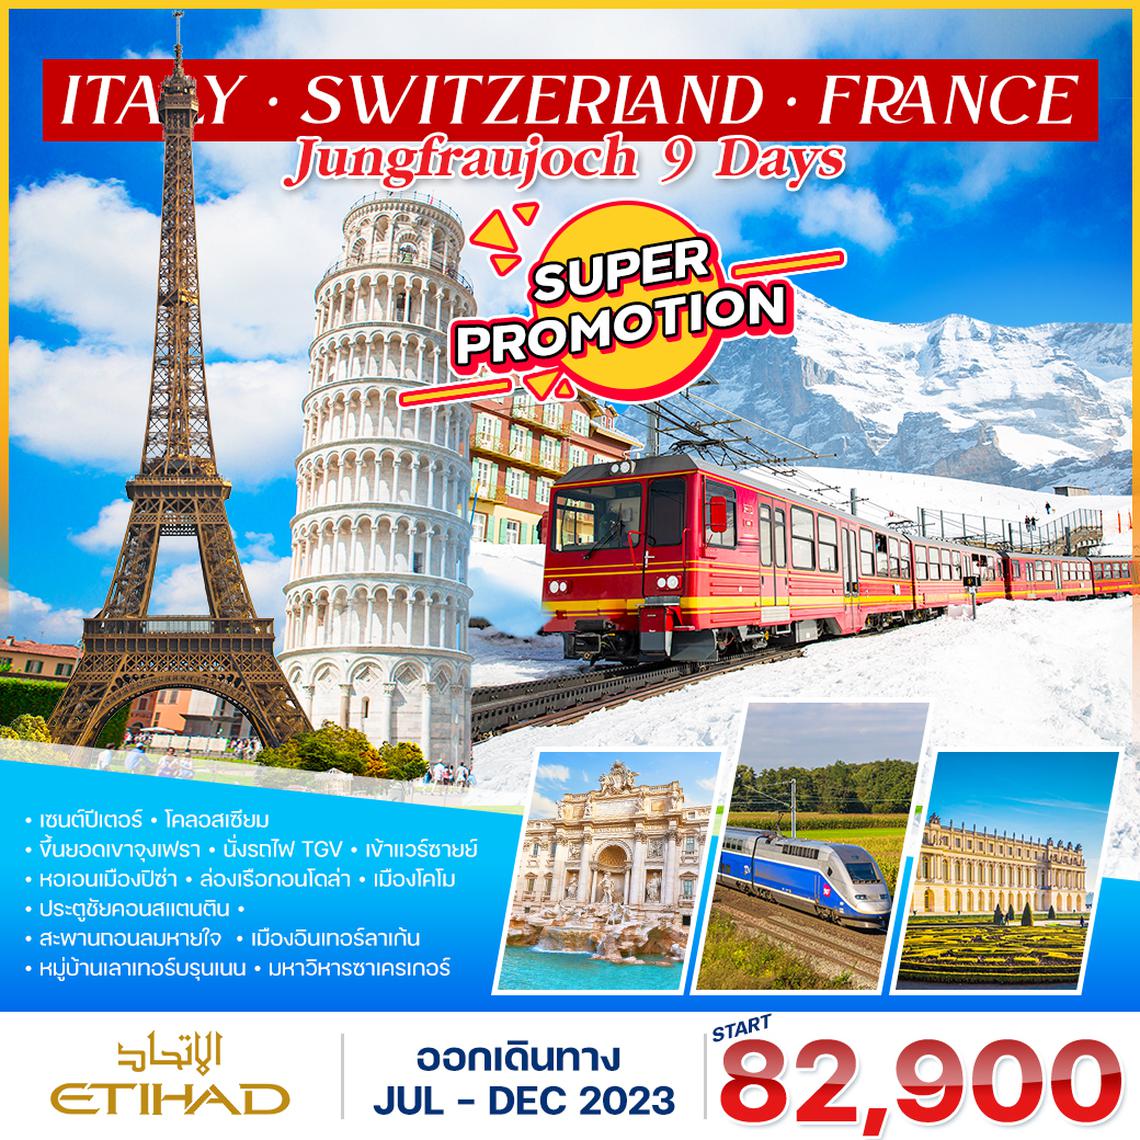 โปรแกรม อิตาลี-สวิตเซอร์แลนด์-ฝรั่งเศส TGV 9 วัน 6 คืน (EY) JUL-DEC